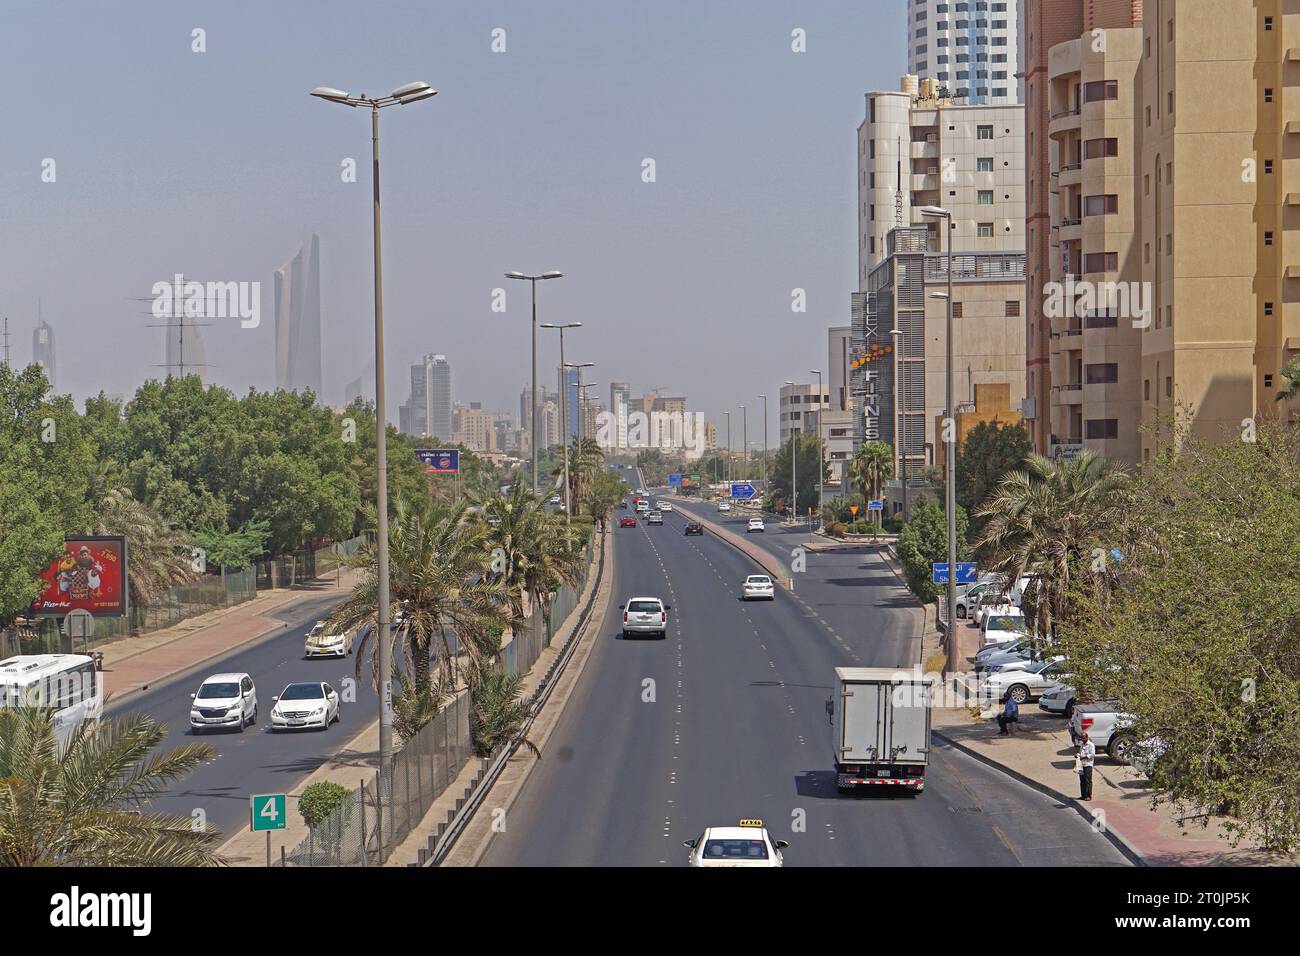 Kuwait City, Koweït - 29 juin 2018 : rue large avec trois voies dans chaque direction à la vue de la ville de jour d'été à horizon Shaab. Banque D'Images